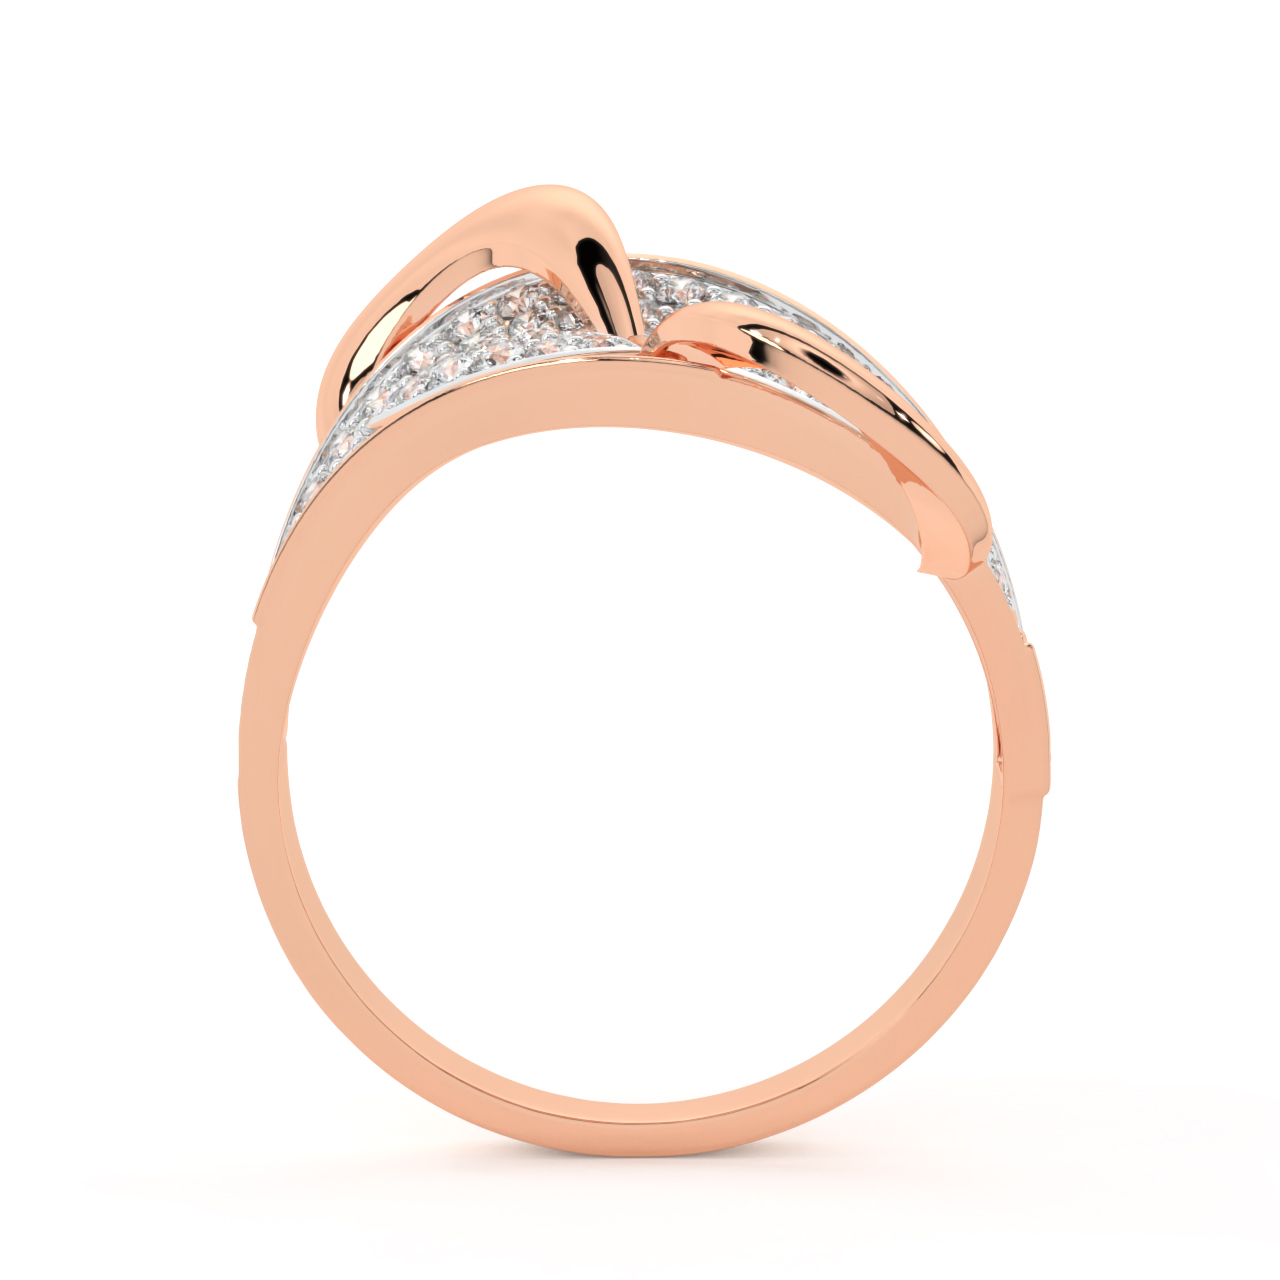 Stylish Gold Diamond Engagement Ring